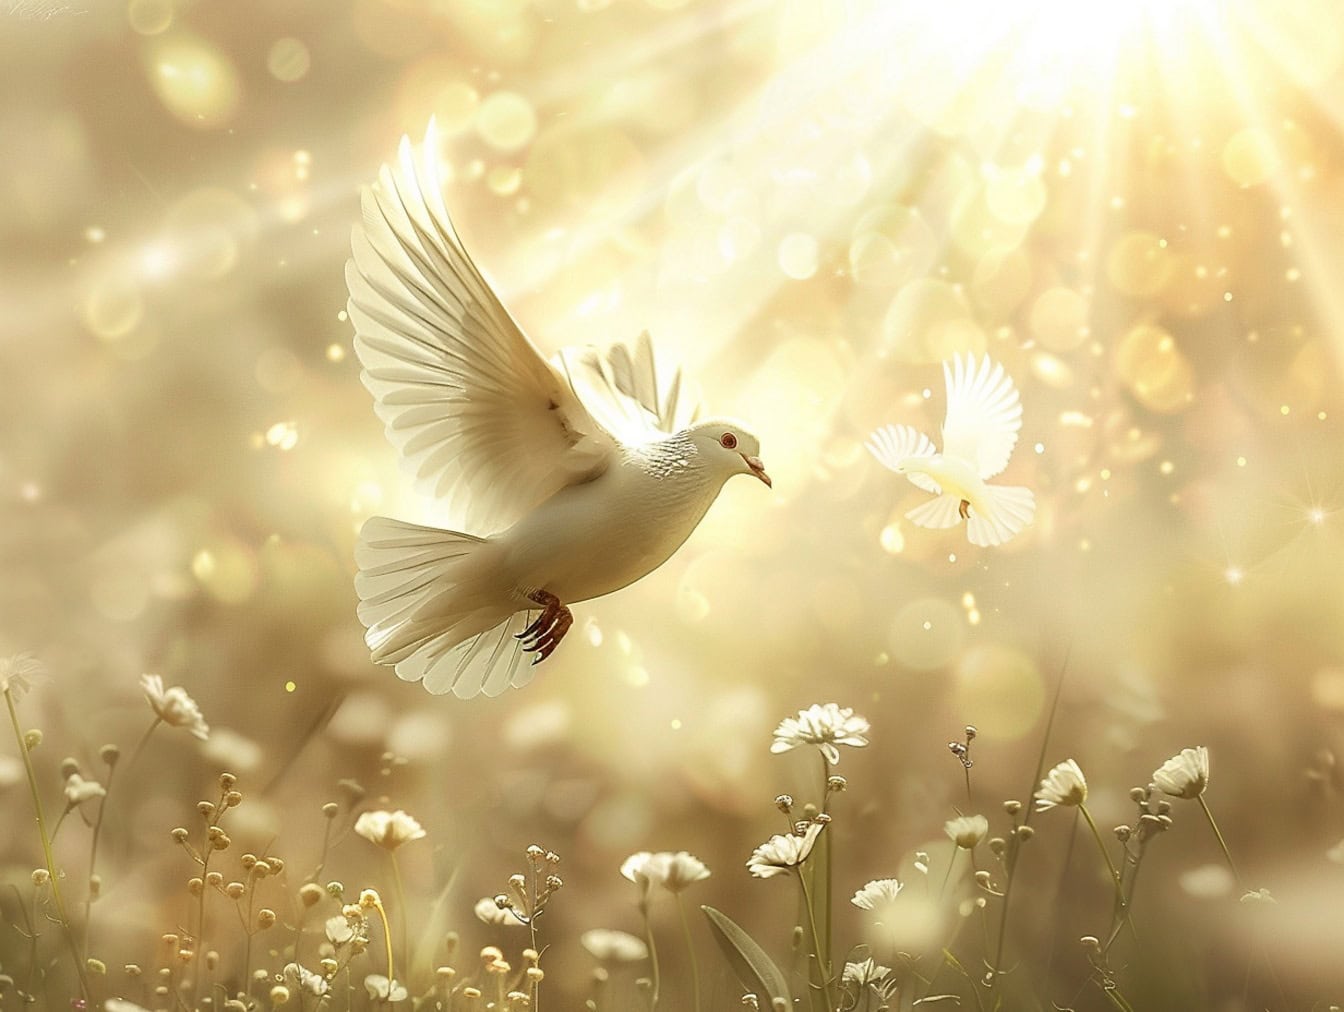 Fehér galamb repül a levegőben fehér virágok felett, fényes napsugarakkal a háttérben, a szabadság illusztrációja